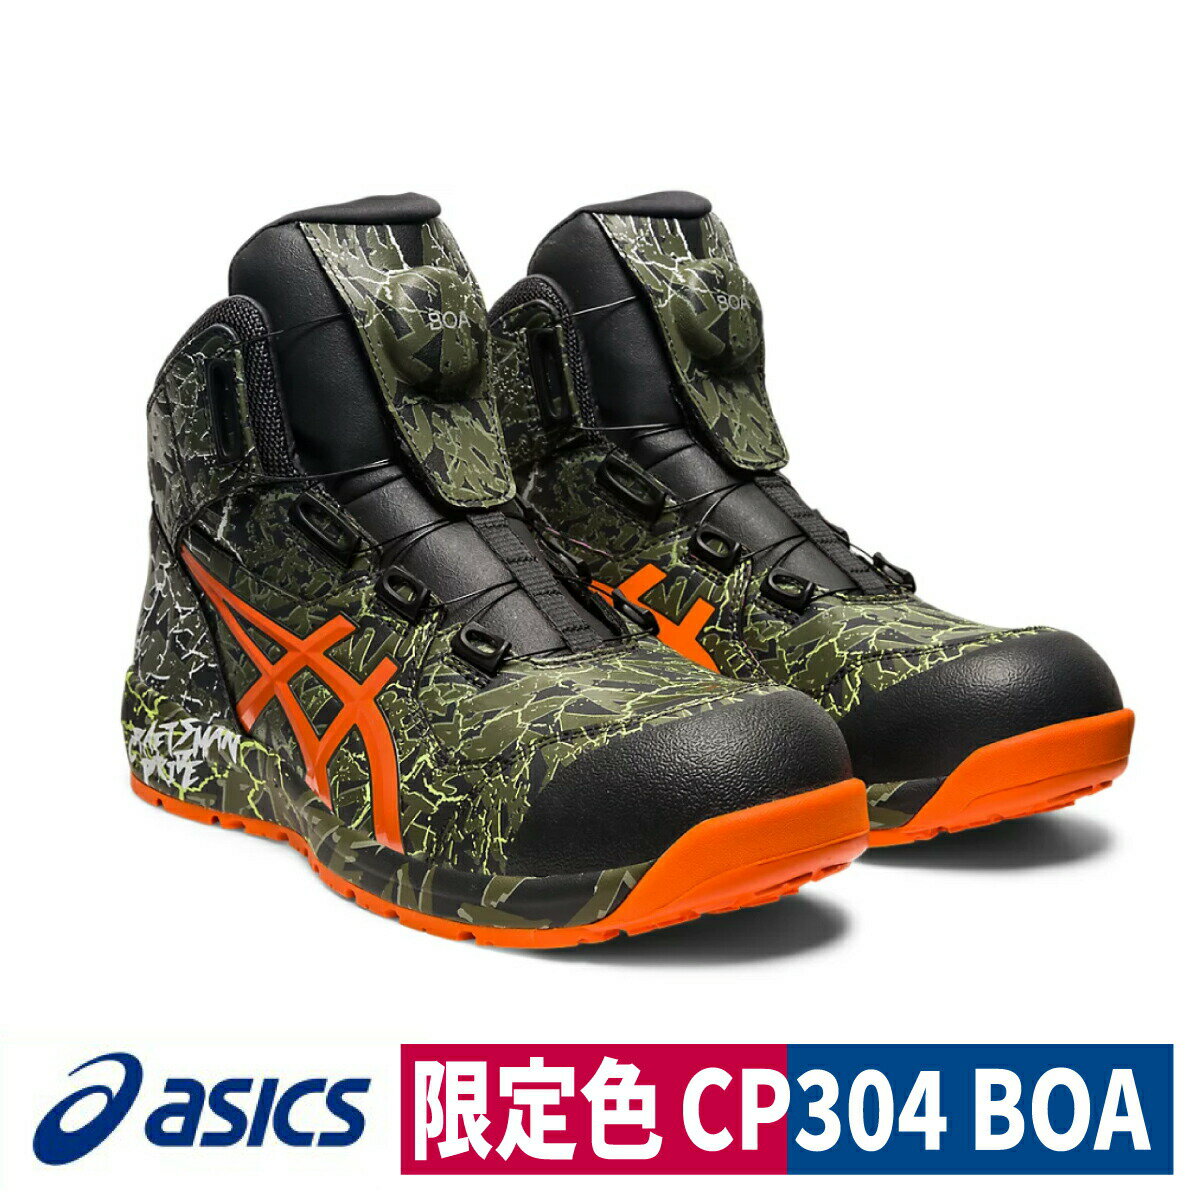 asics 安全靴 CP304 MAGMA Boa 限定色 マントルグリーン/ハバネロ ウィンジョブ ハイカット セーフティシューズ プロスニーカー